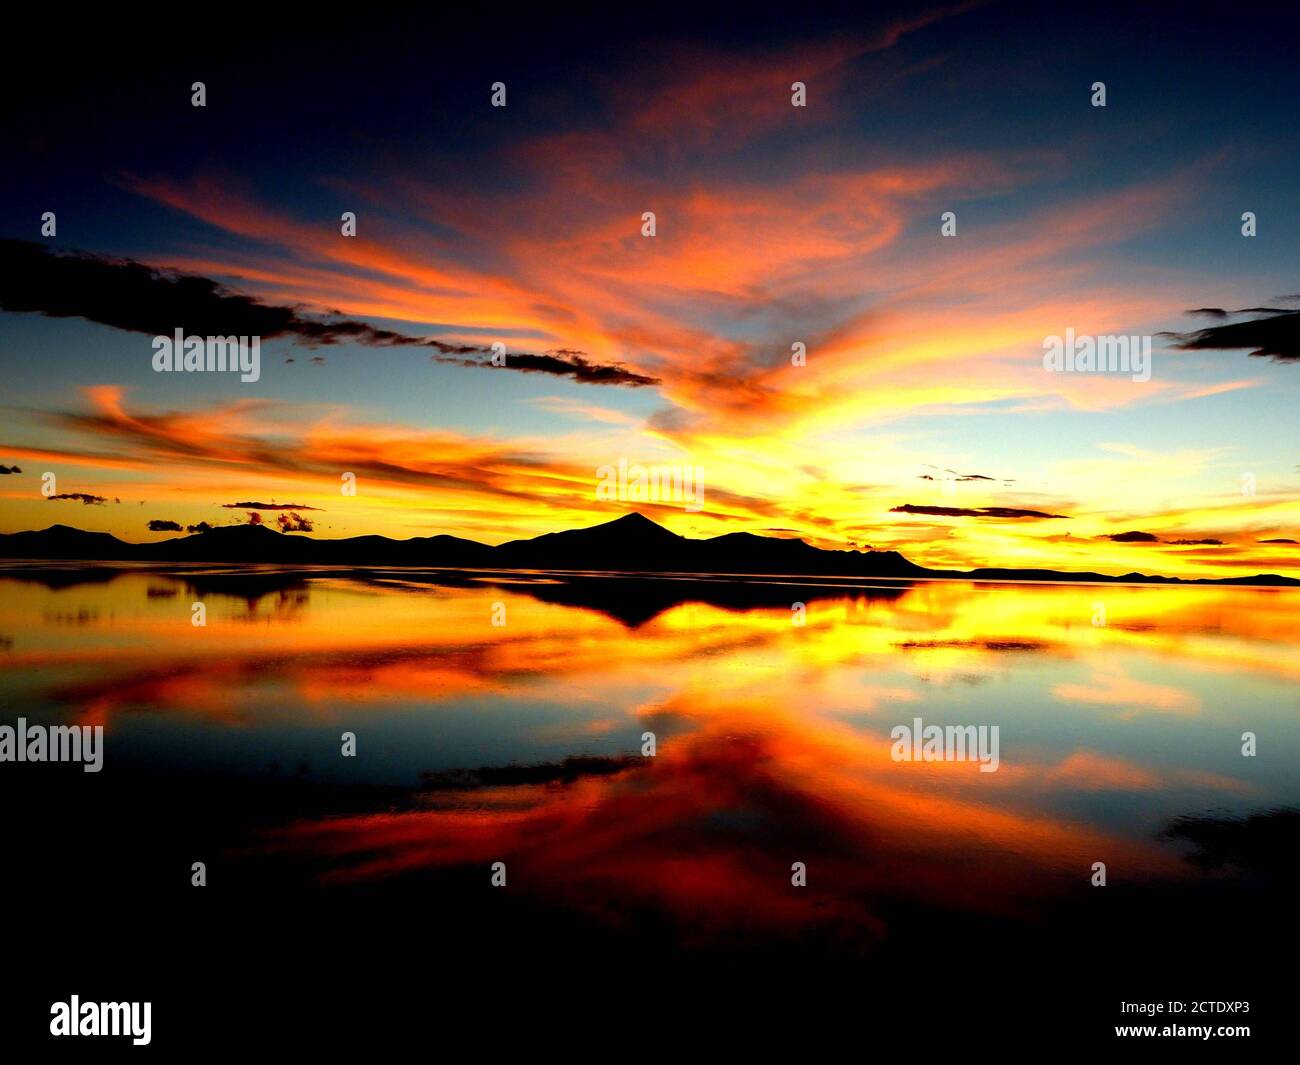 Magnifique coucher de soleil. Orange Sundown. Des nuages de ciel spectaculaires se reflètent dans l'eau du lac salé. Ciel coloré.paysage surréaliste du désert.Salar de Uyuni,Bolivie Banque D'Images